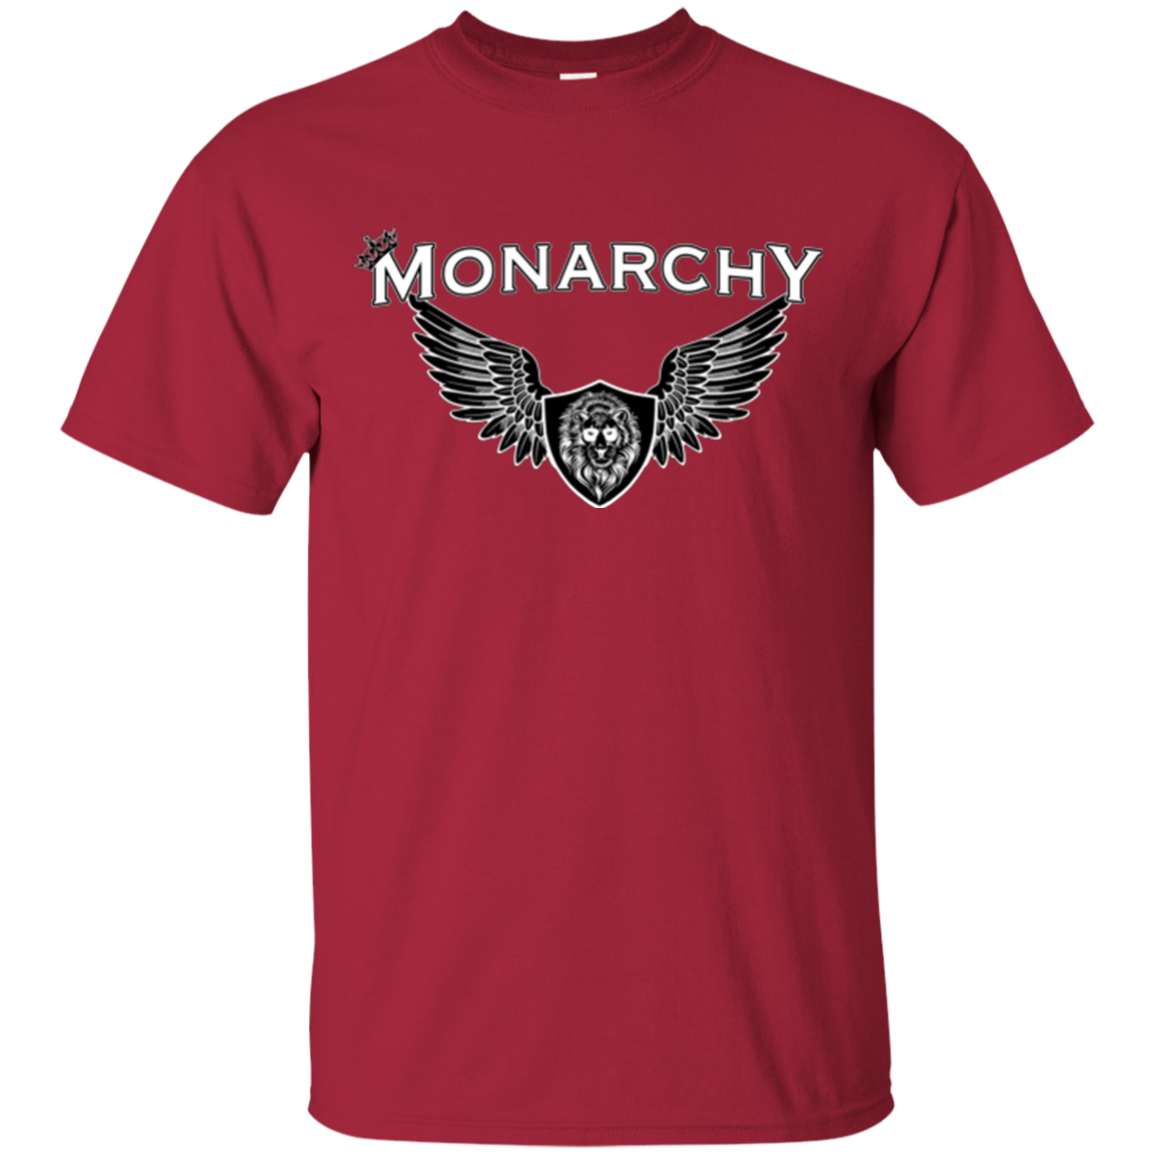 MONARCHY LION BLK T-SHIRT